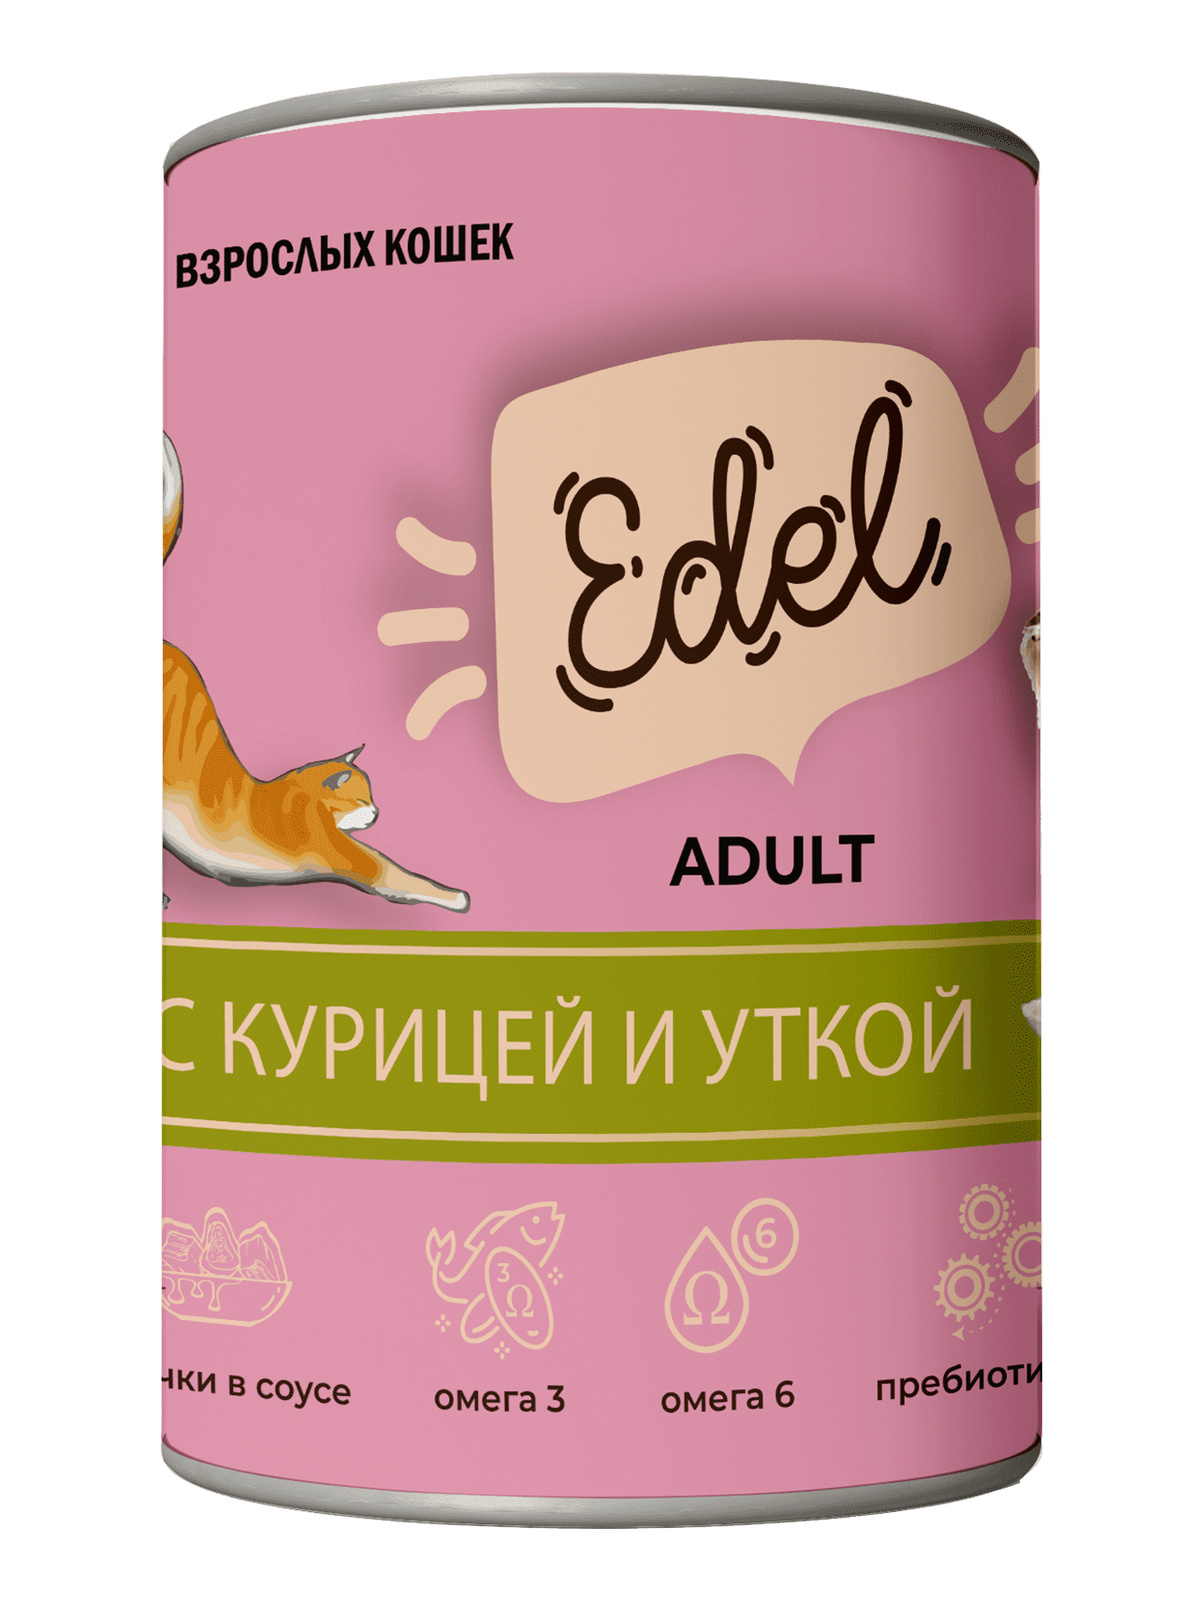 Edel Edel консервированный корм для кошек кусочки в соусе с курицей и уткой (400 г)